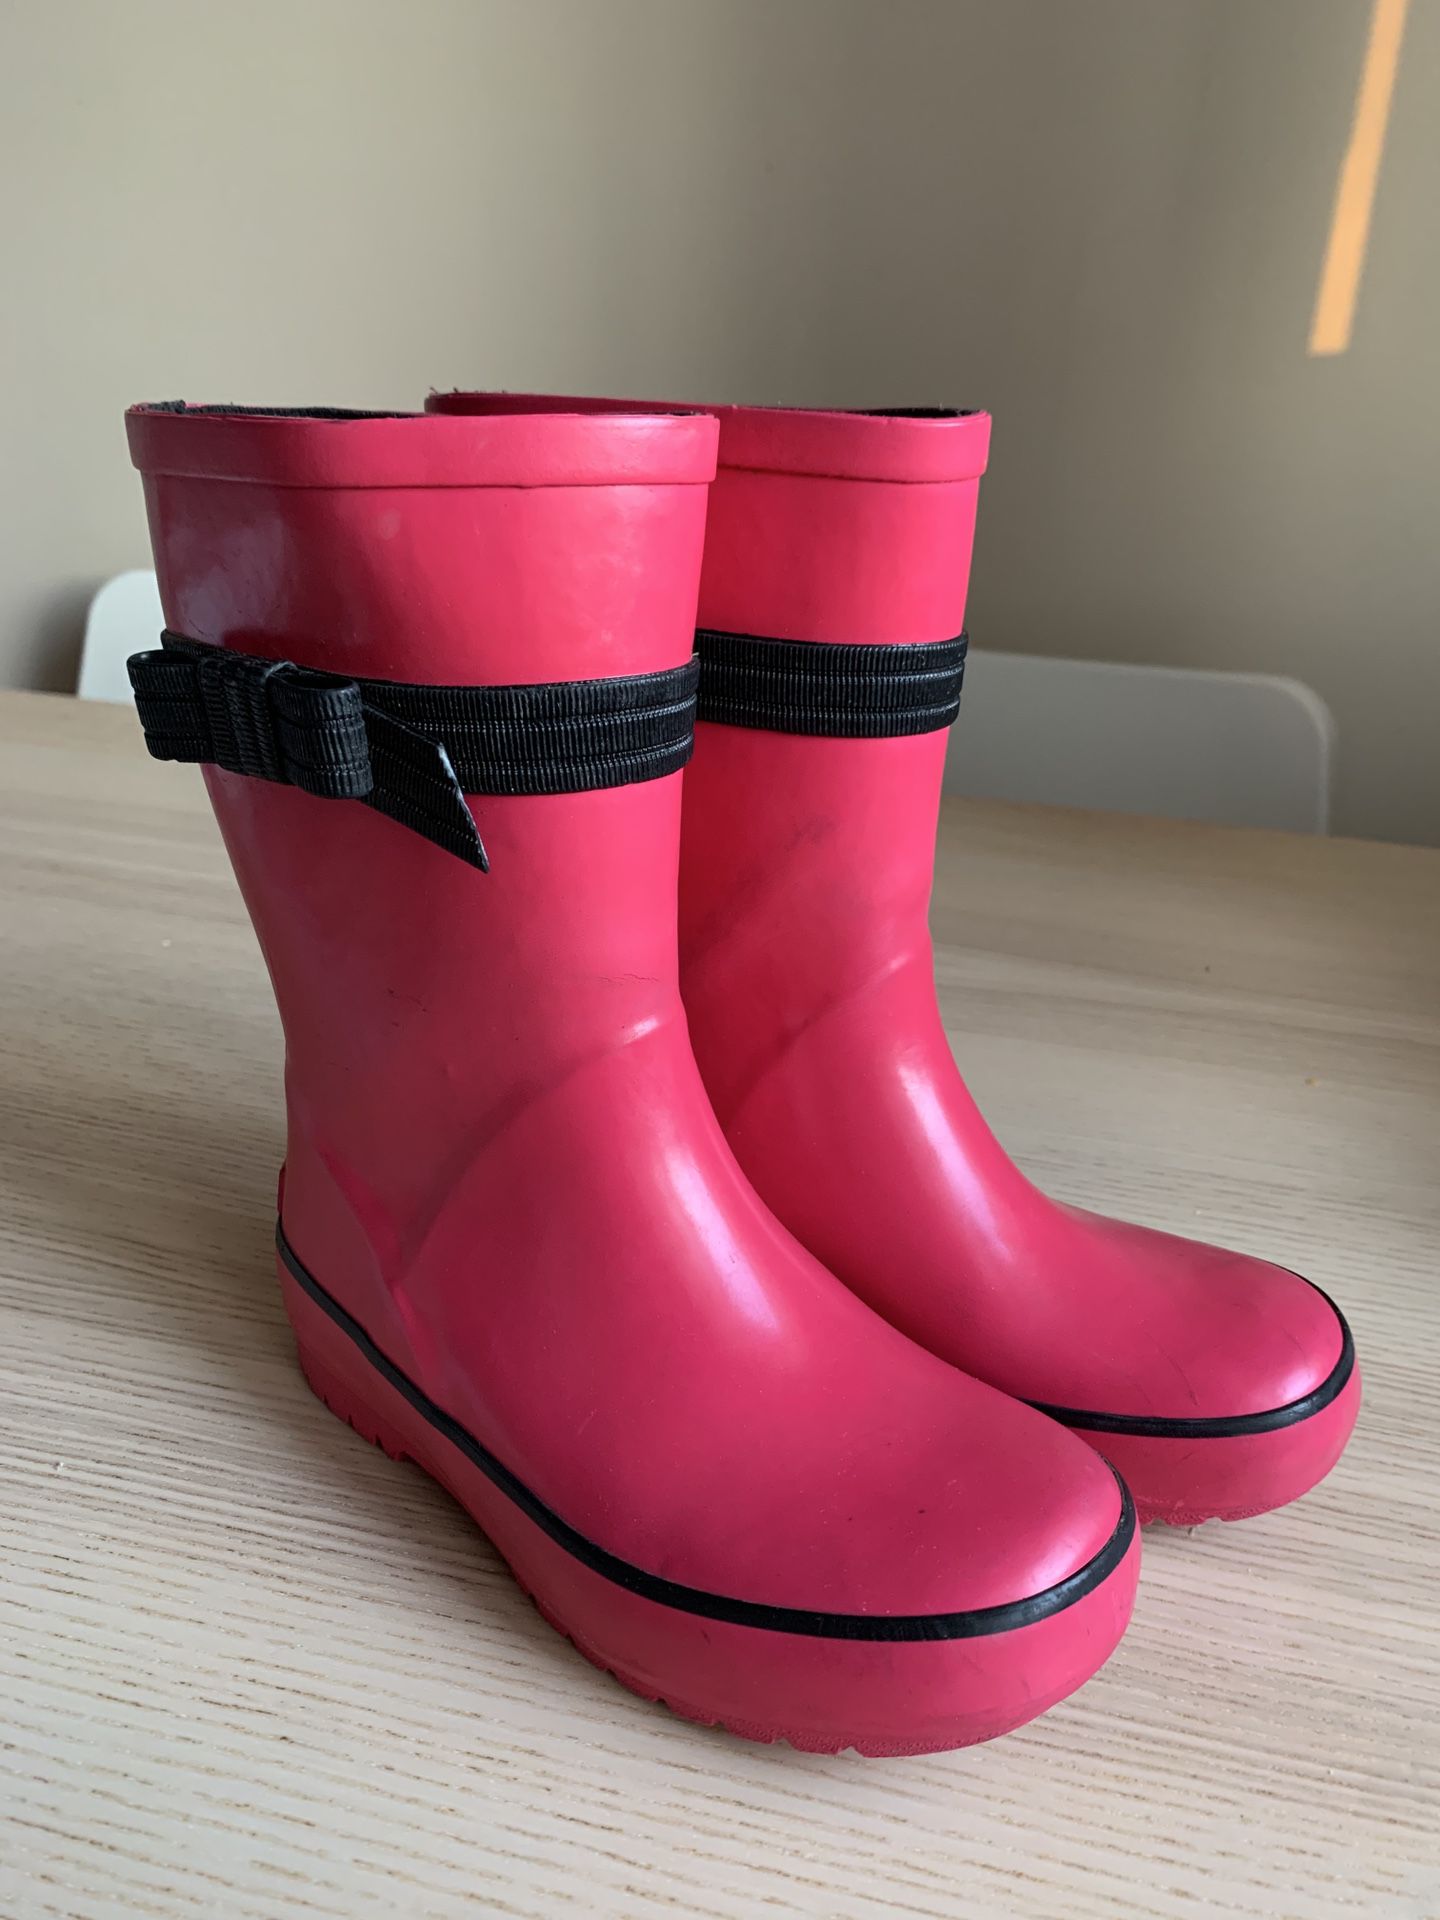 Rain boots girls size 12